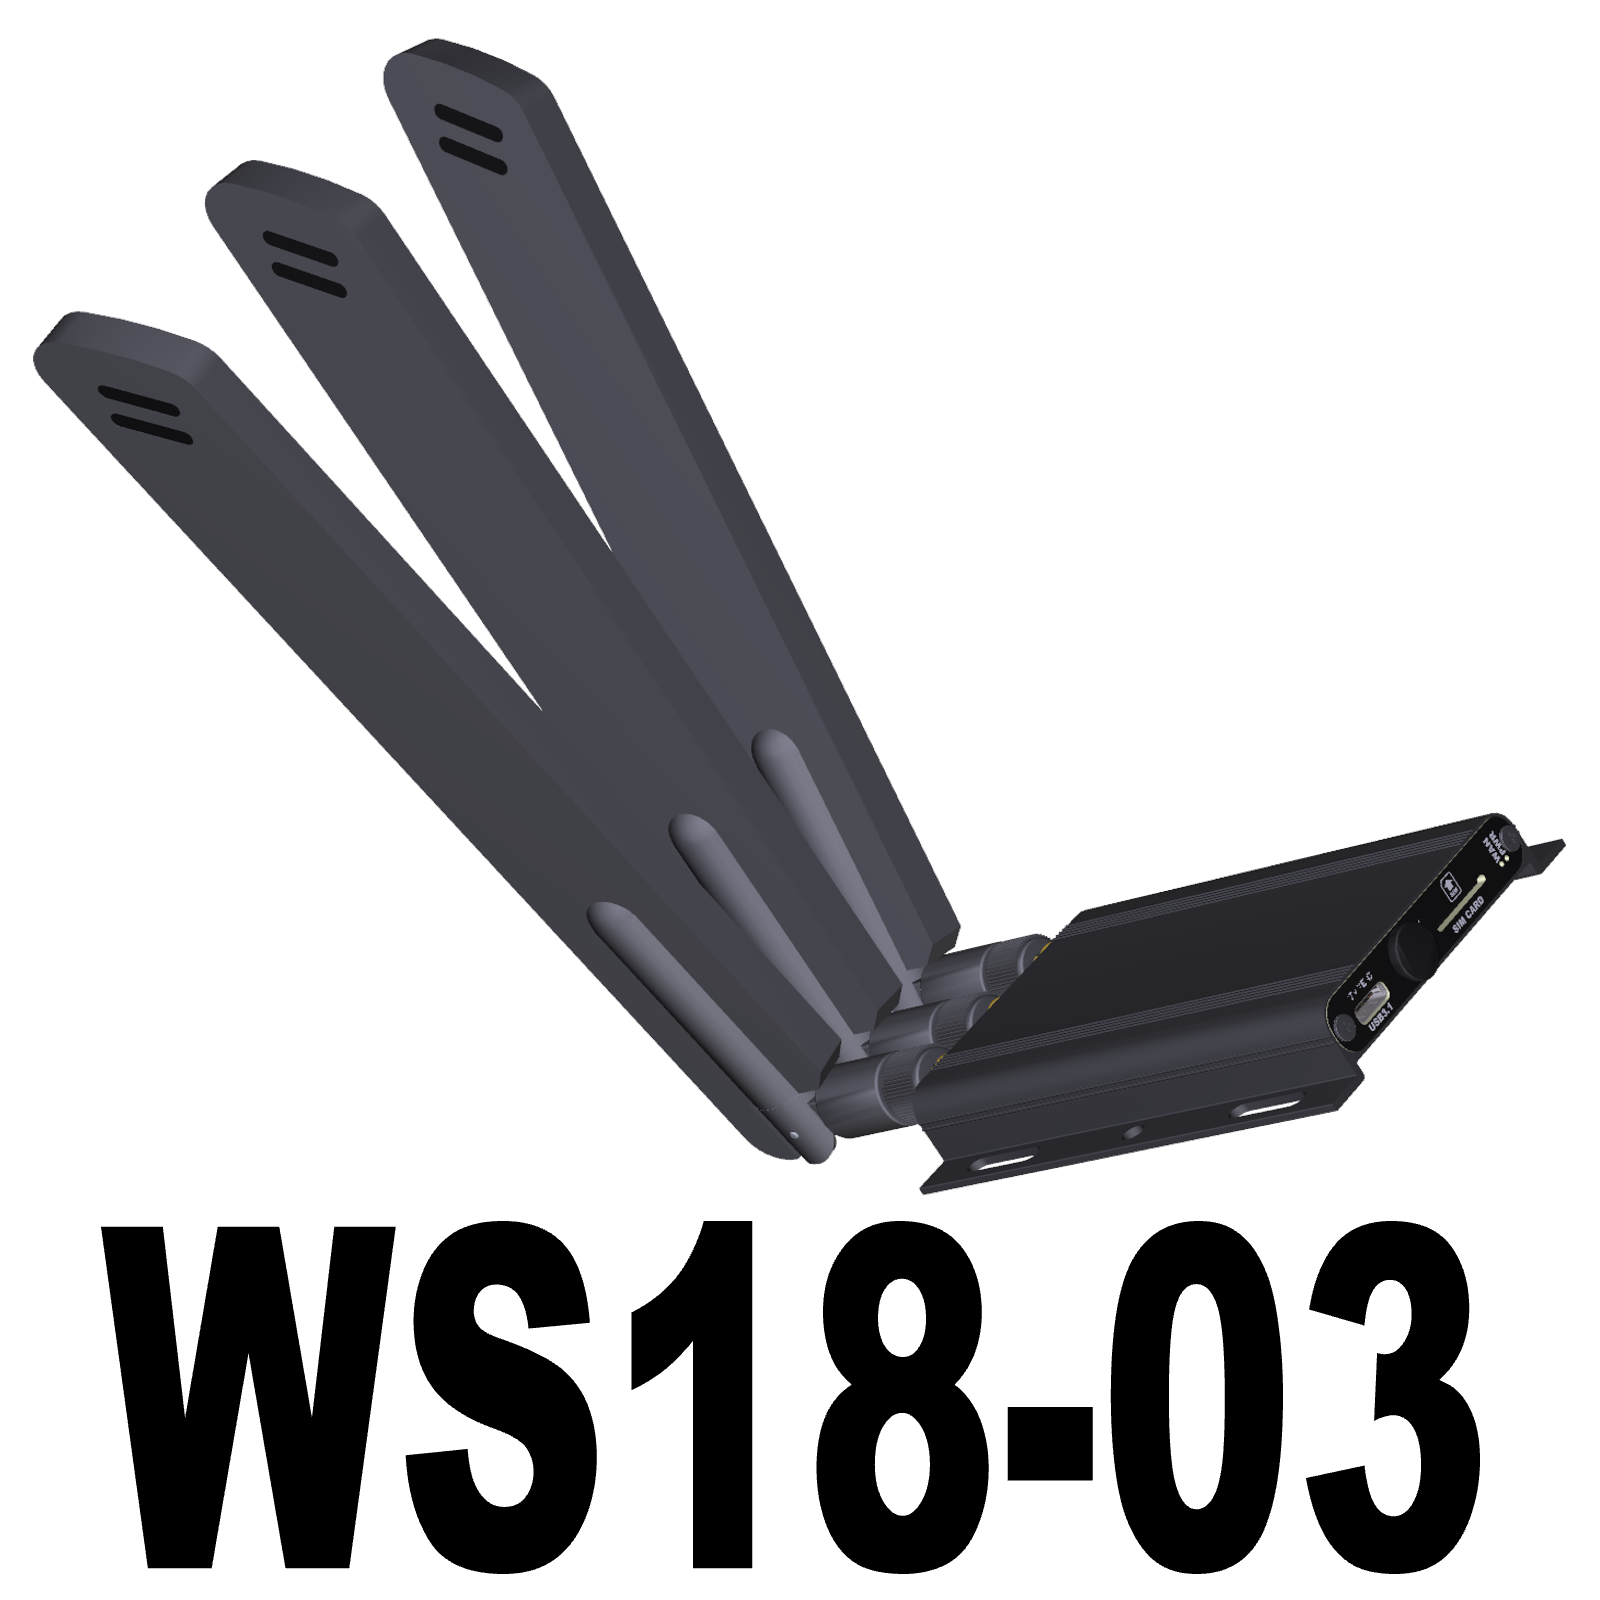 Adaptateur M2 B Key USB 3.0 pour WWAN LTE Avec support SIM 3G 4G 5G